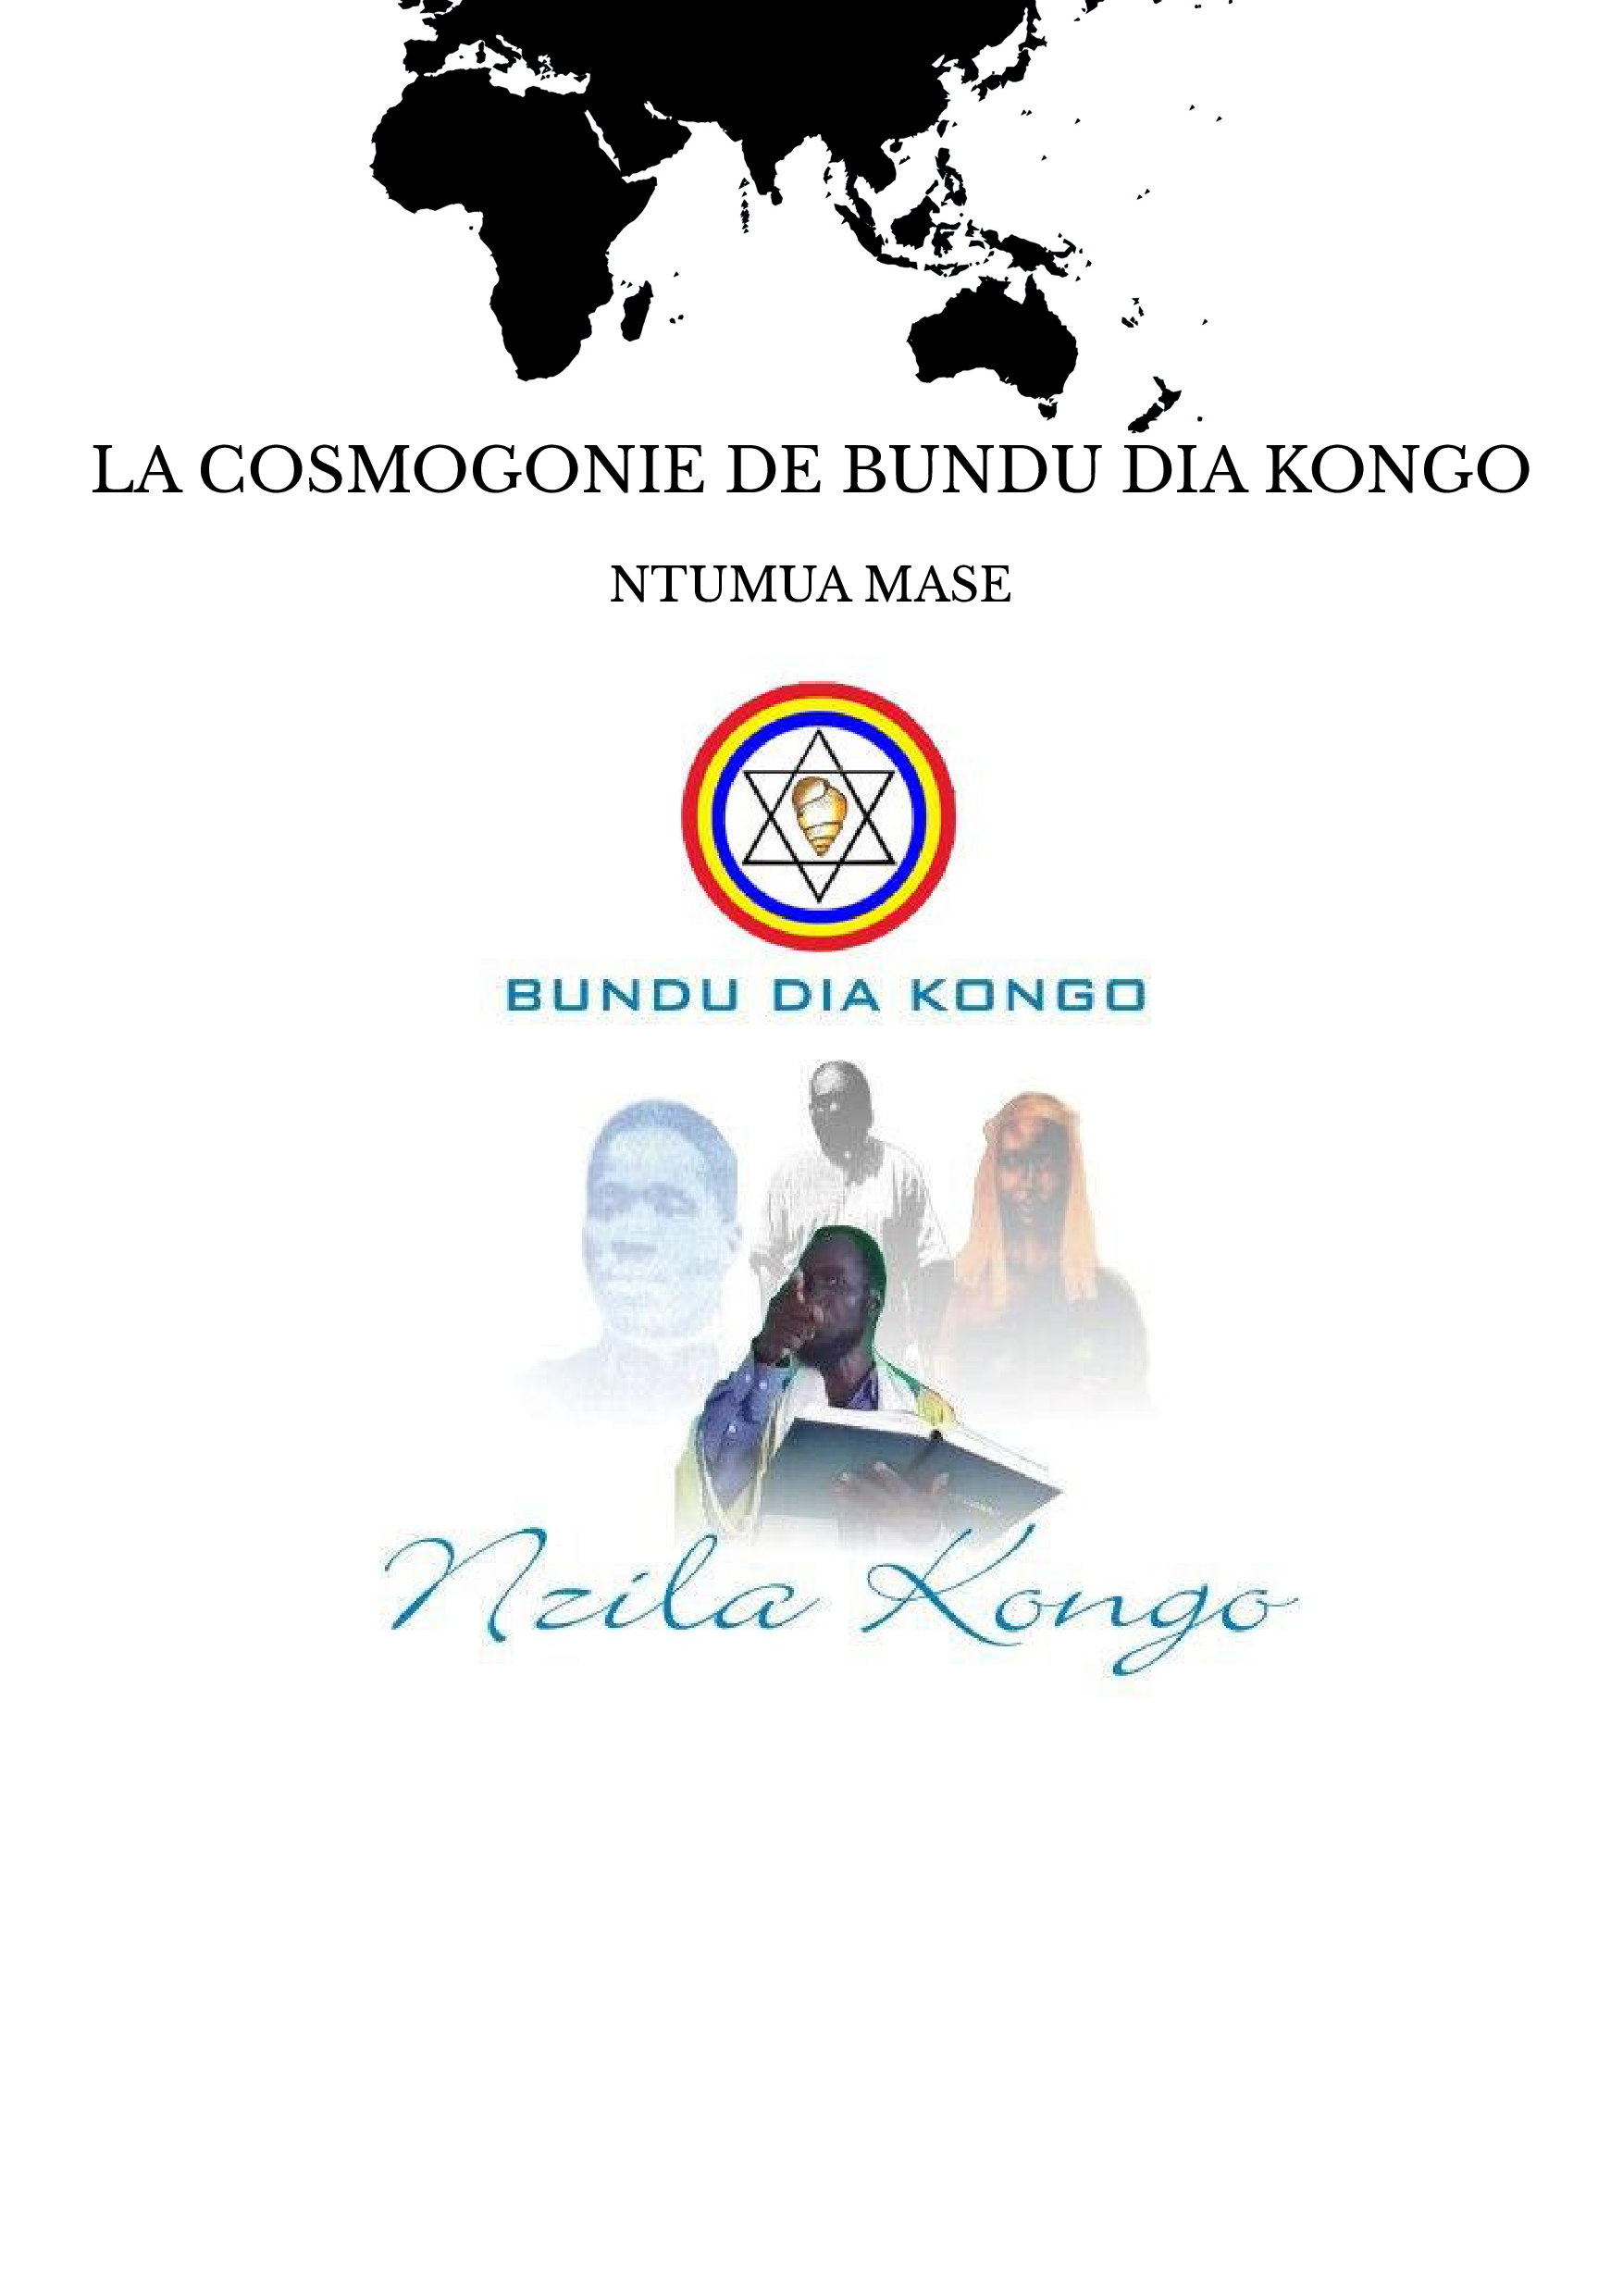 LA COSMOGONIE DE BUNDU DIA KONGO